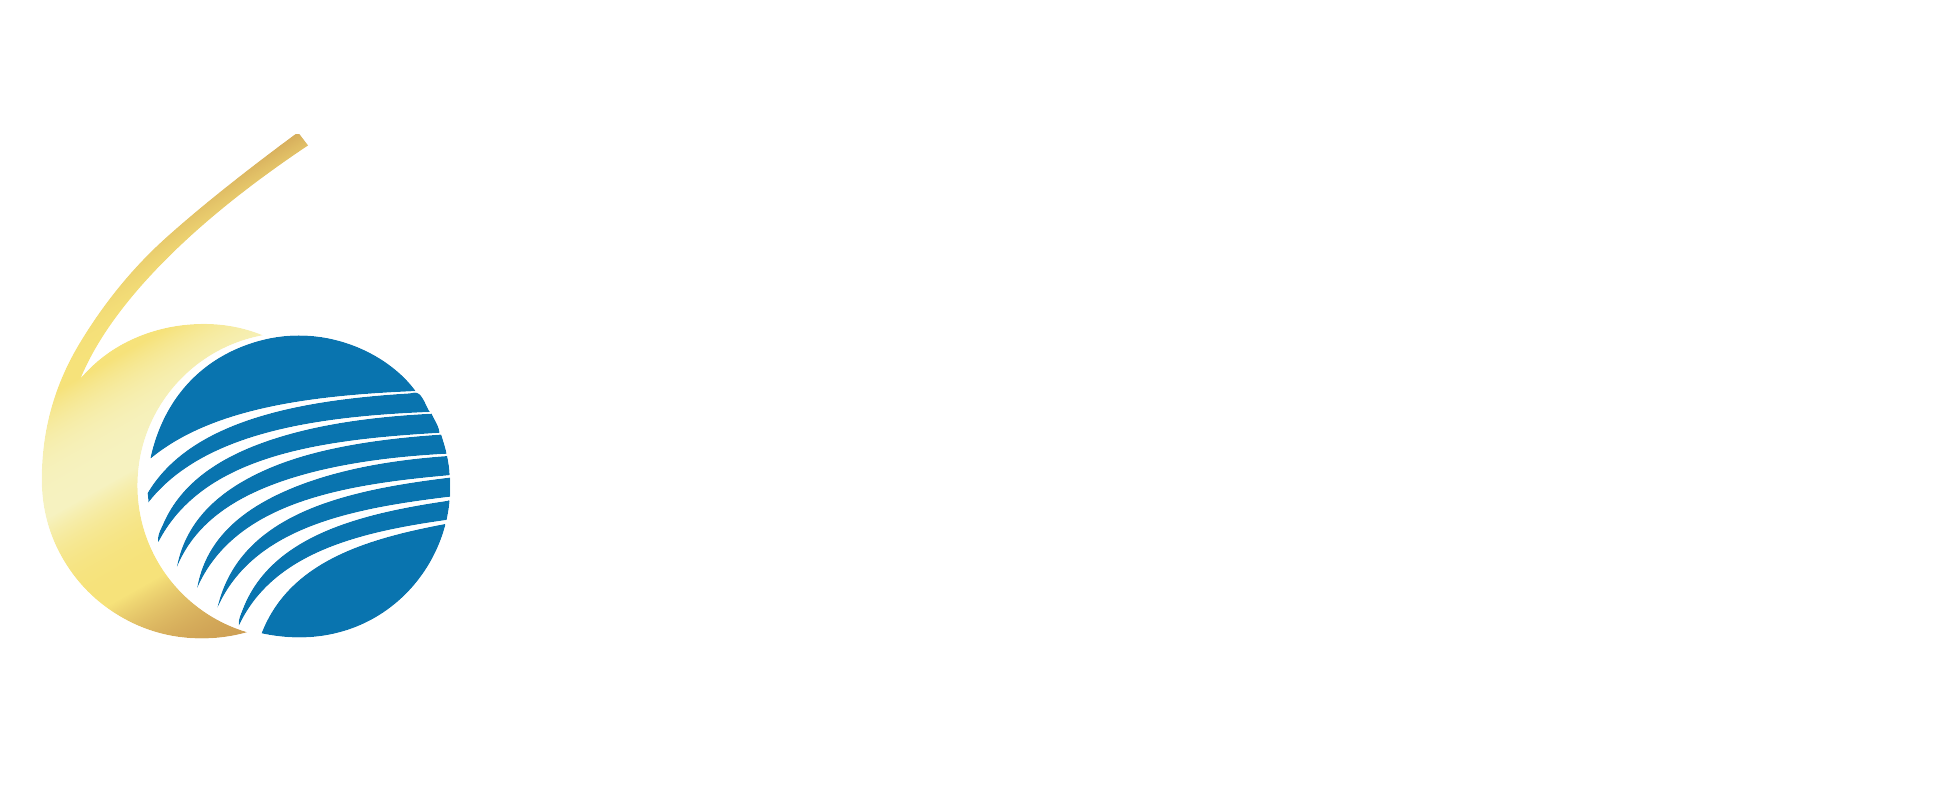 Hotel Baía Cascais